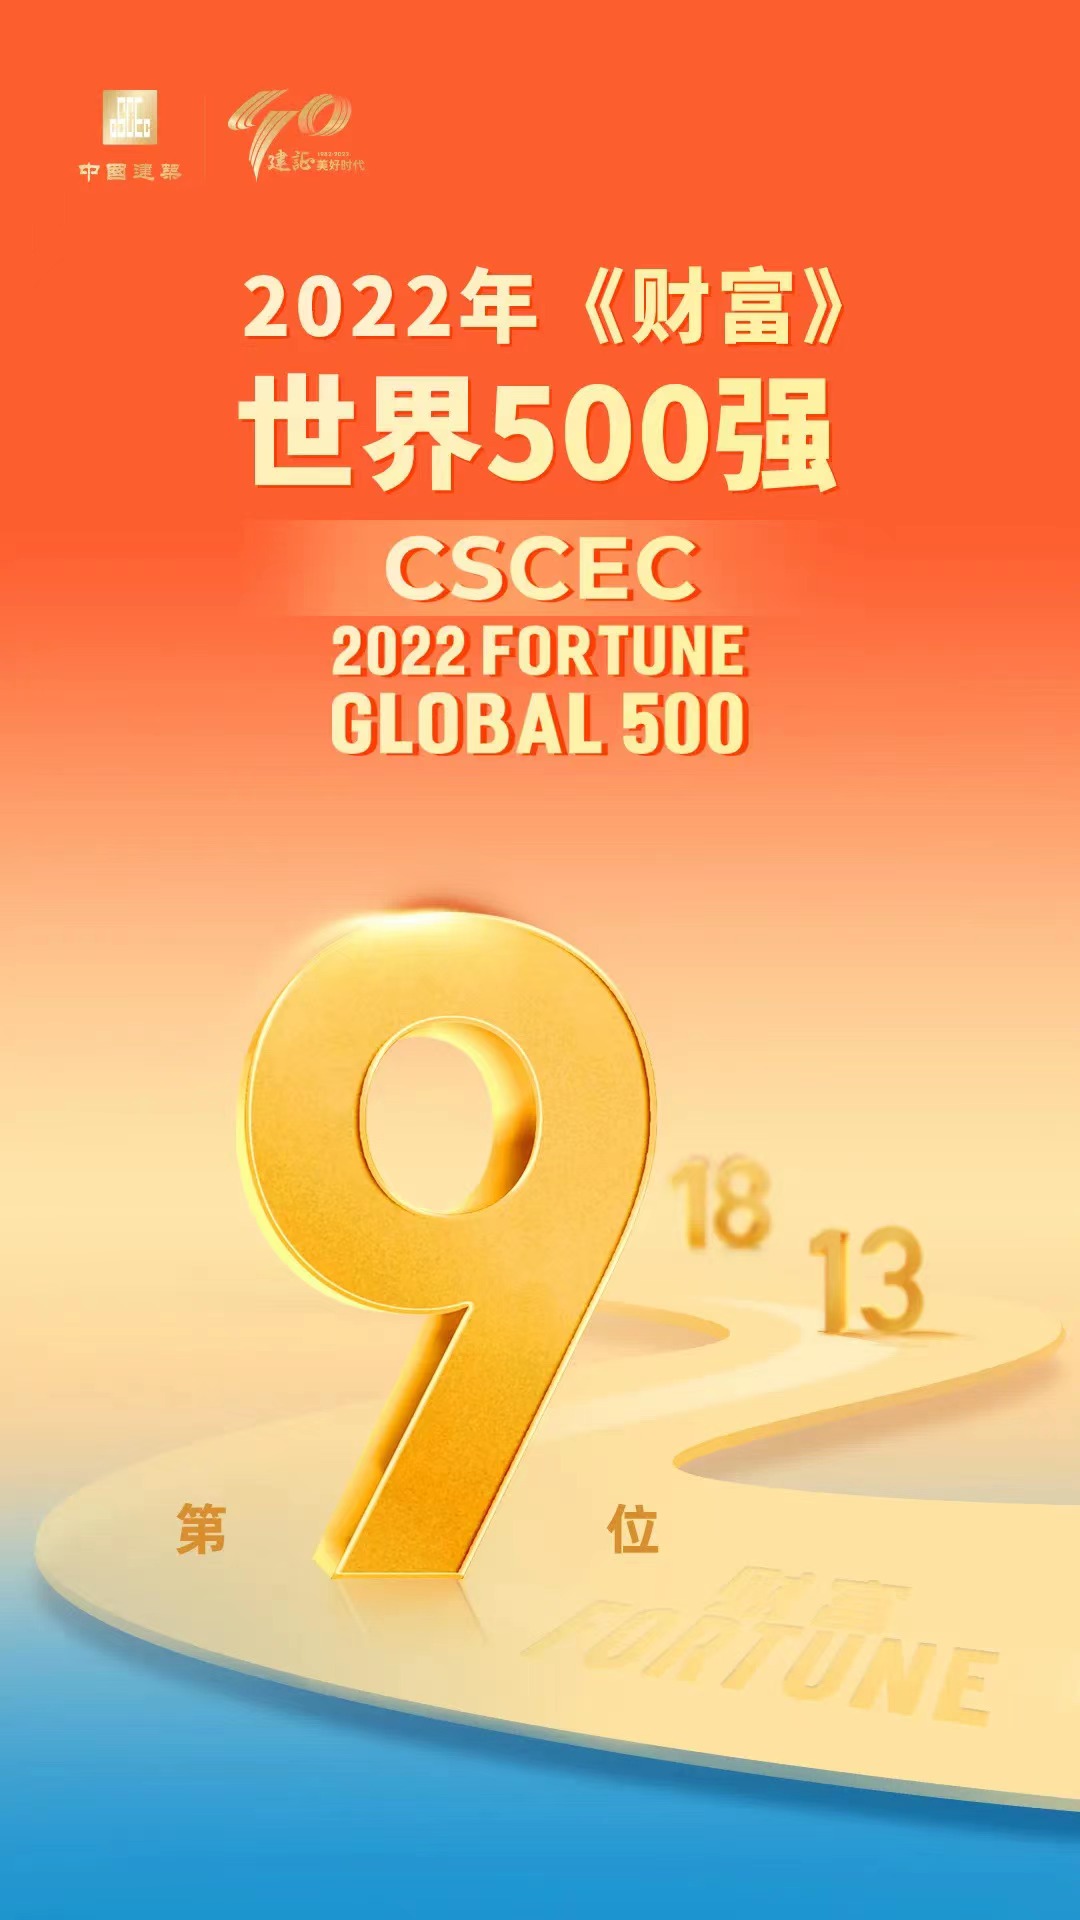 中国建筑跃升至《财富》国际500强第9位